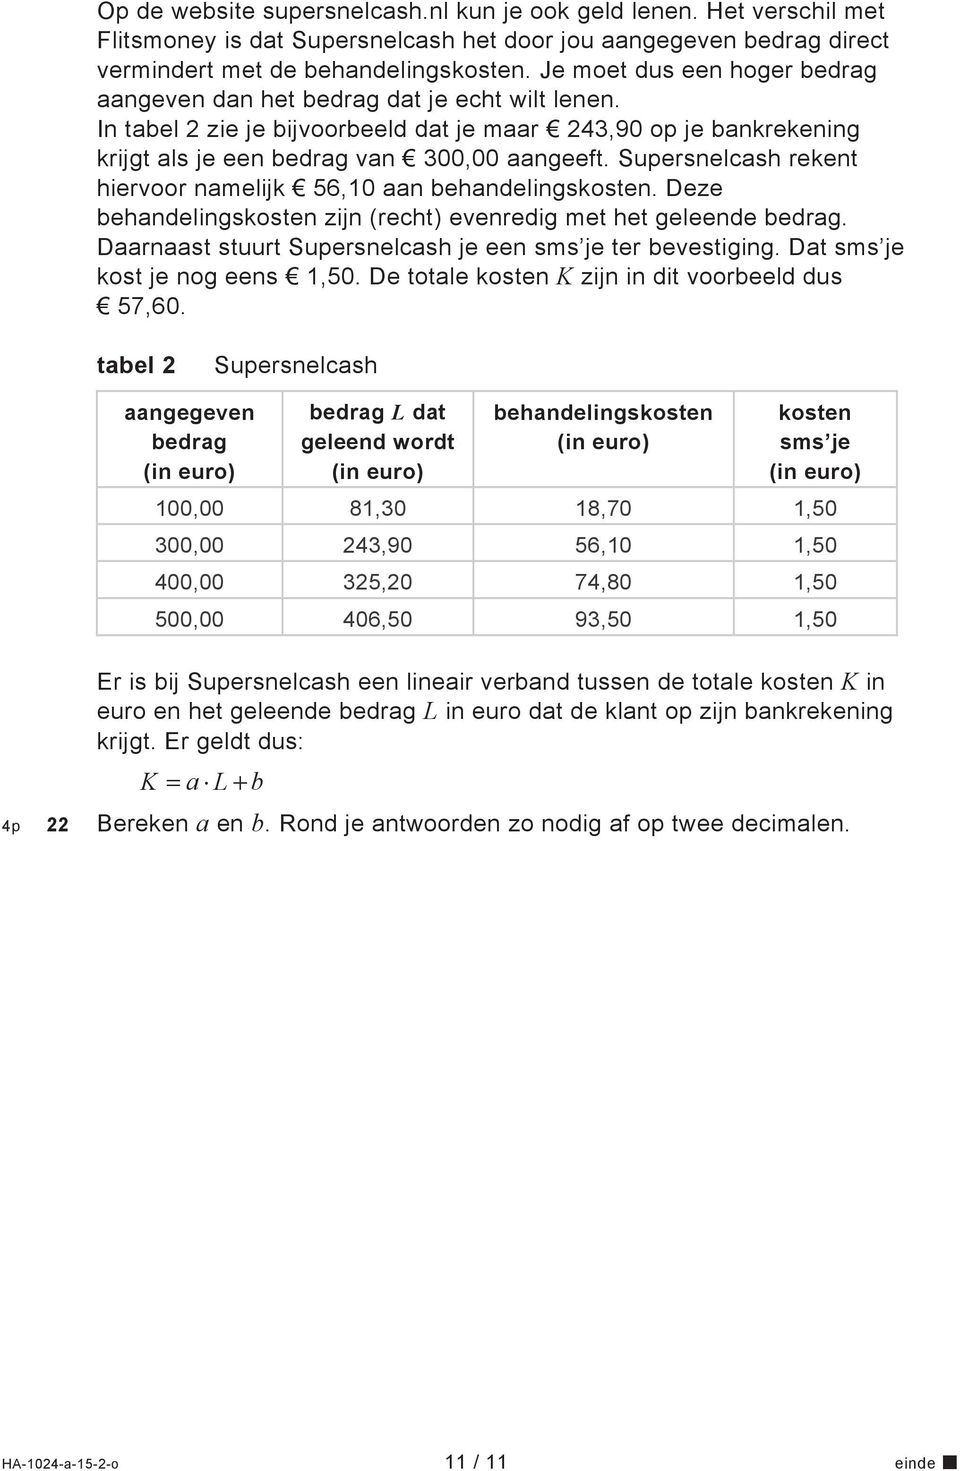 Supersnelcash rekent hiervoor namelijk 56,10 aan behandelingskosten. Deze behandelingskosten zijn (recht) evenredig met het geleende bedrag.